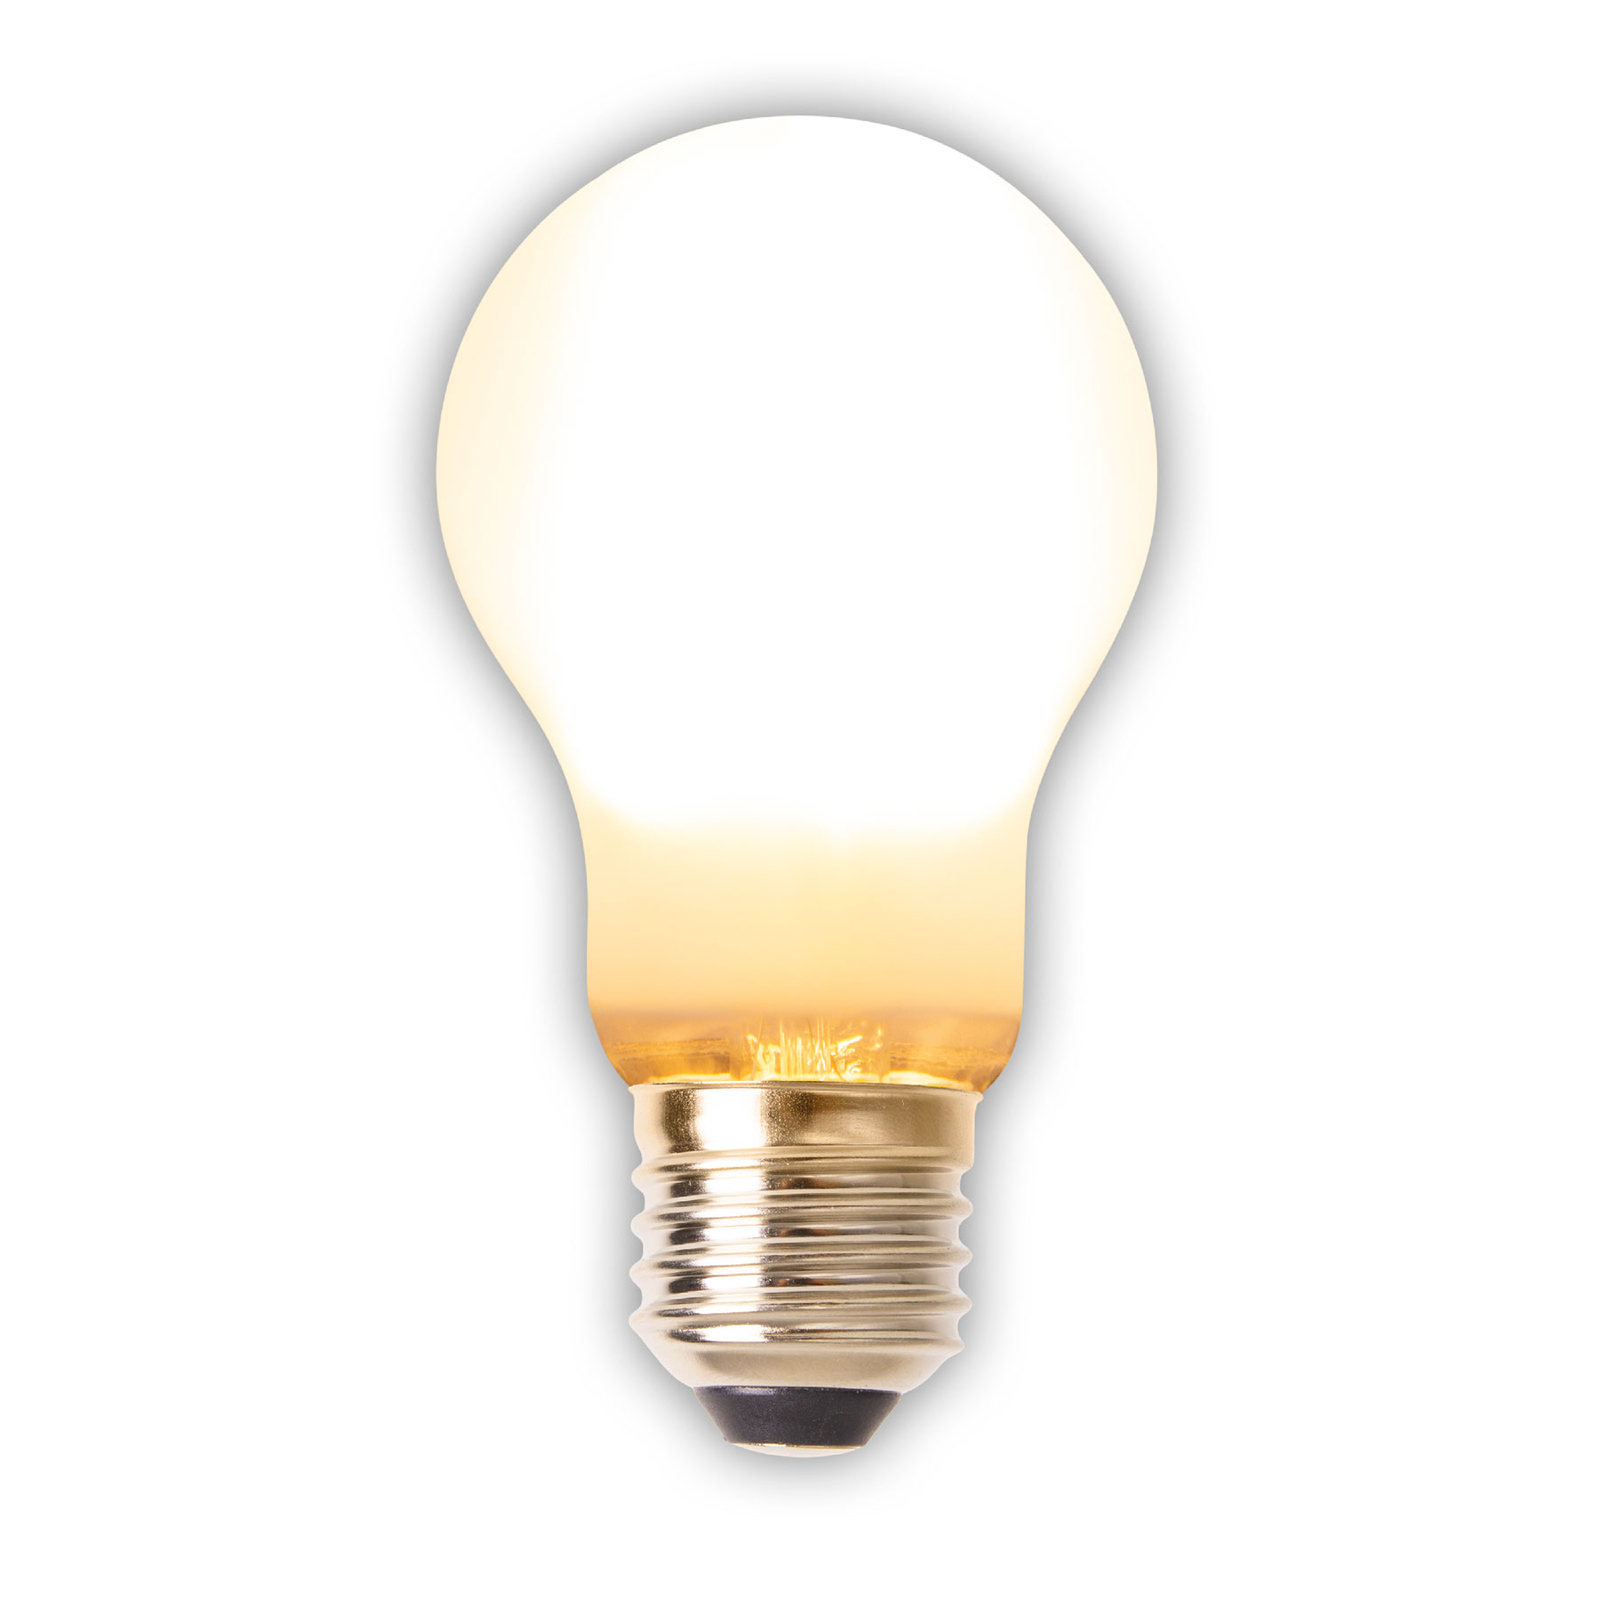 Ampoule LED E27 8,3W 750lm blanc chaud, pack 6